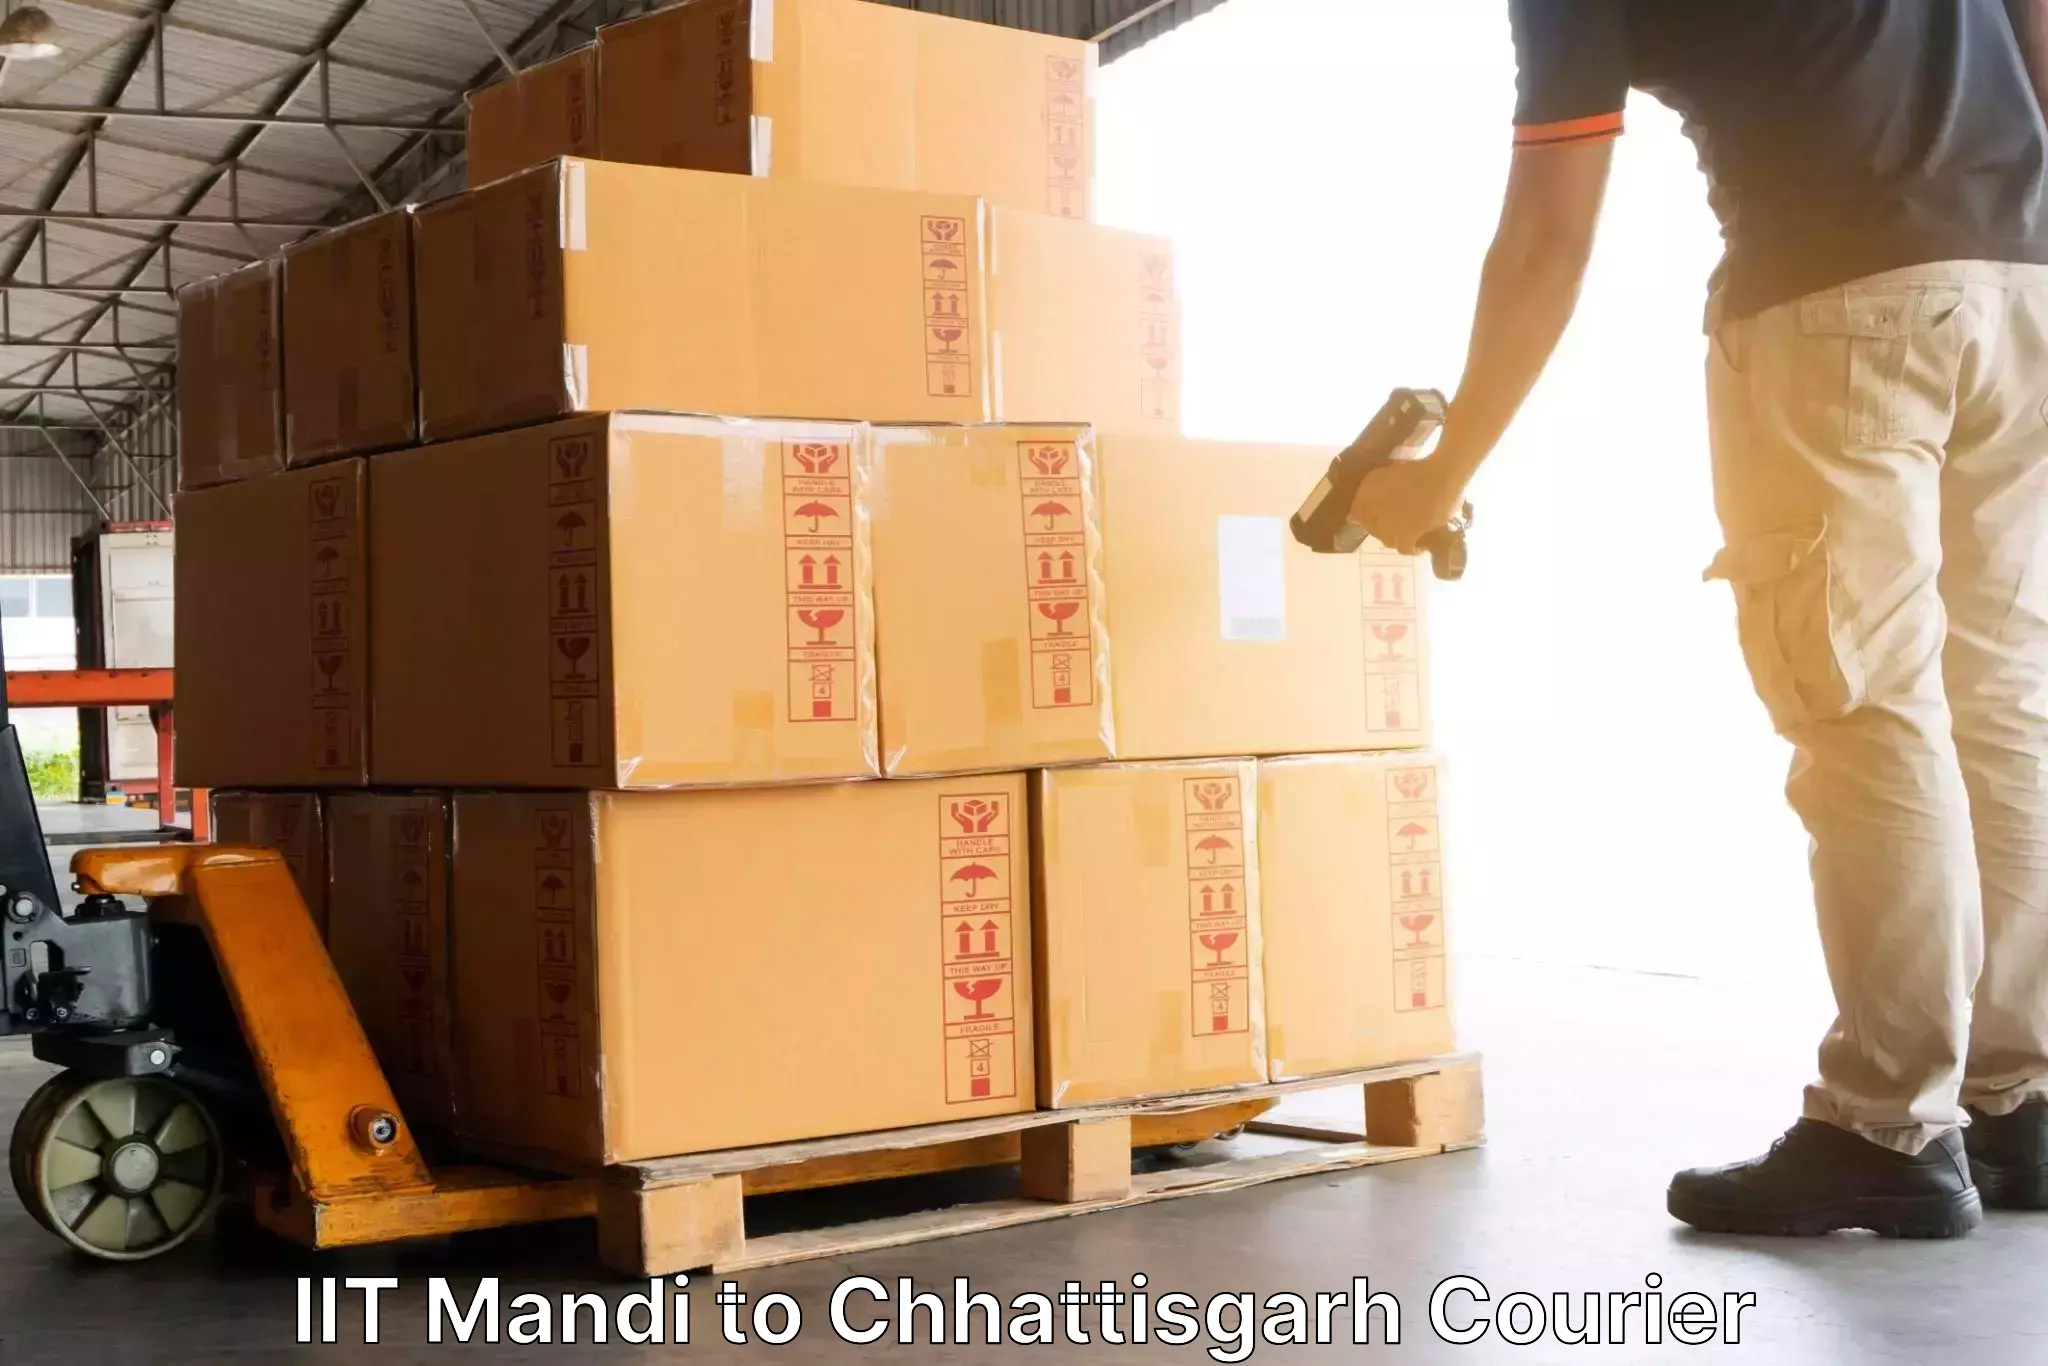 Custom courier packaging IIT Mandi to Bijapur Chhattisgarh